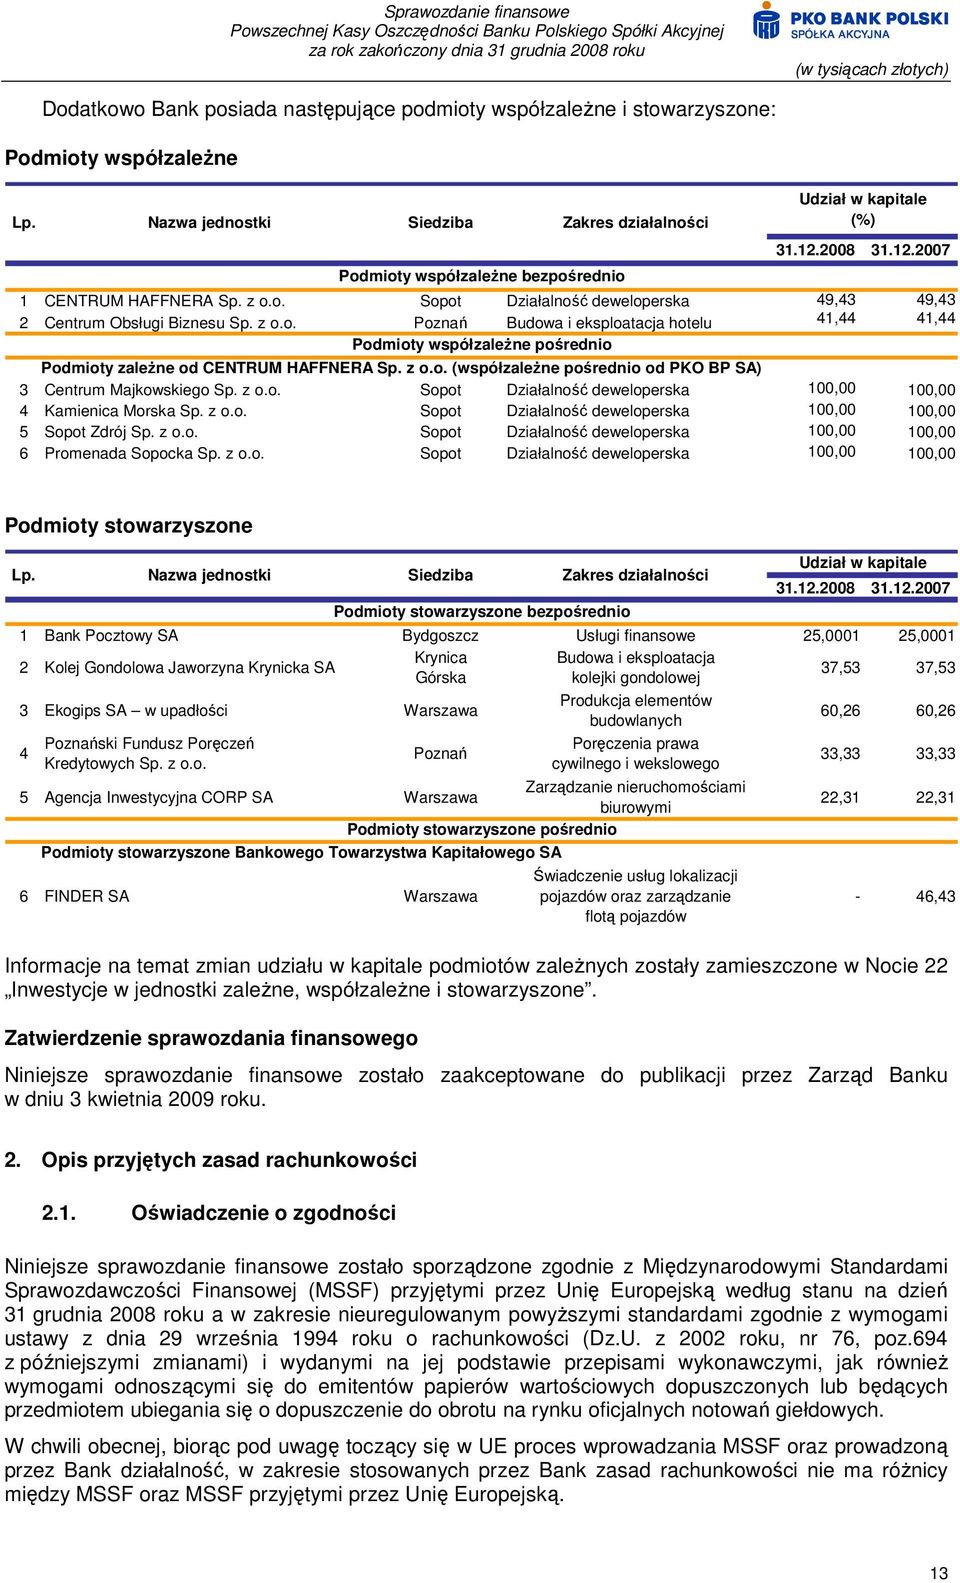 z o.o. Poznań Budowa i eksploatacja hotelu 41,44 41,44 Podmioty współzaleŝne pośrednio Podmioty zaleŝne od CENTRUM HAFFNERA Sp. z o.o. (współzaleŝne pośrednio od PKO BP SA) 3 Centrum Majkowskiego Sp.